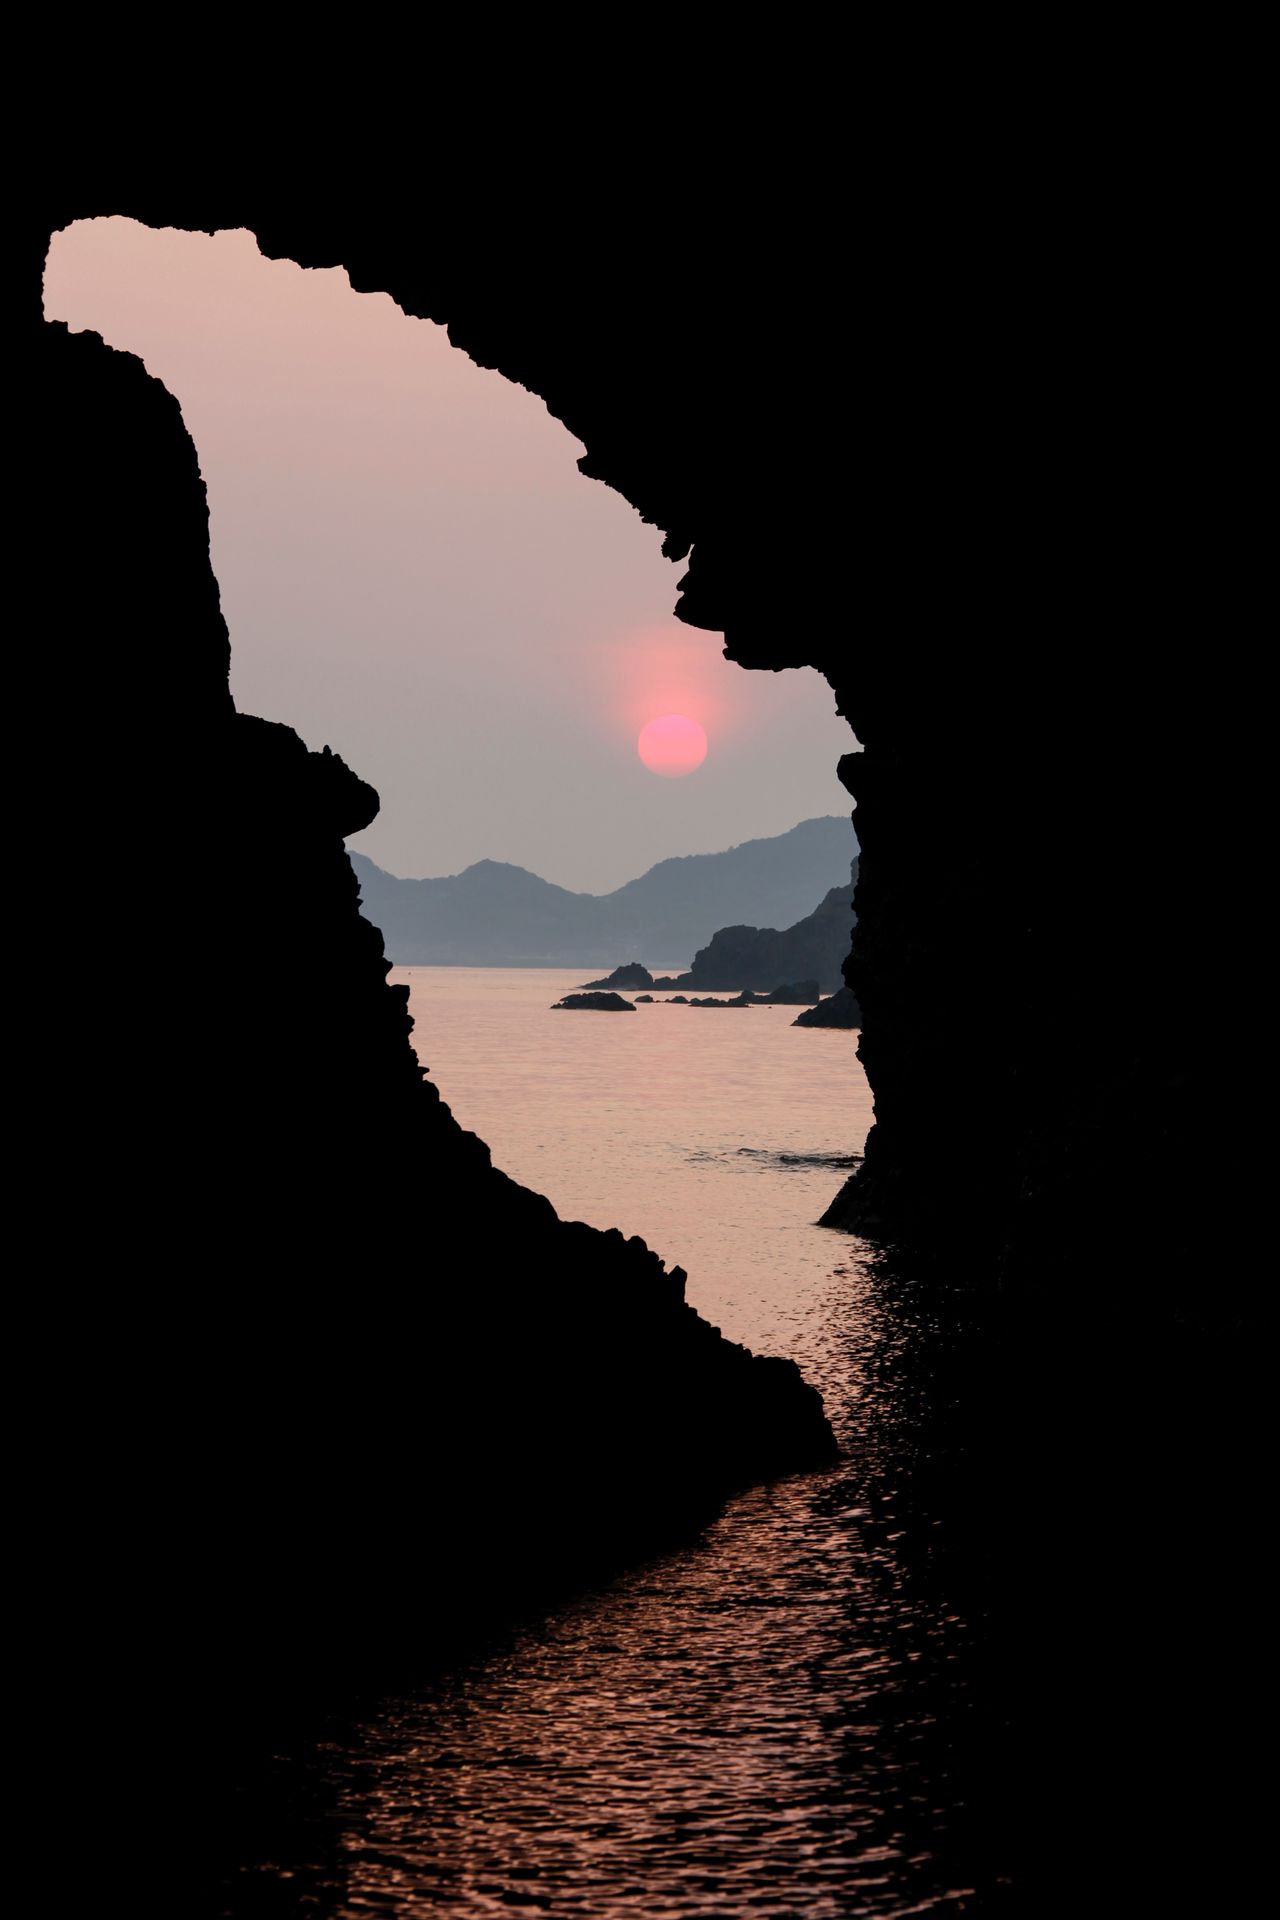 La caverna Kaka-no-kukedo, en donde se dice que nació la deidad Sadano Ōmikami. Es un monumento natural y uno de los paisajes más bellos del país, además de un paraje famoso por sus amaneceres, que se pueden disfrutar desde embarcaciones turísticas. (Imagen de la Unión Turística de la Prefectura de Shimane) 